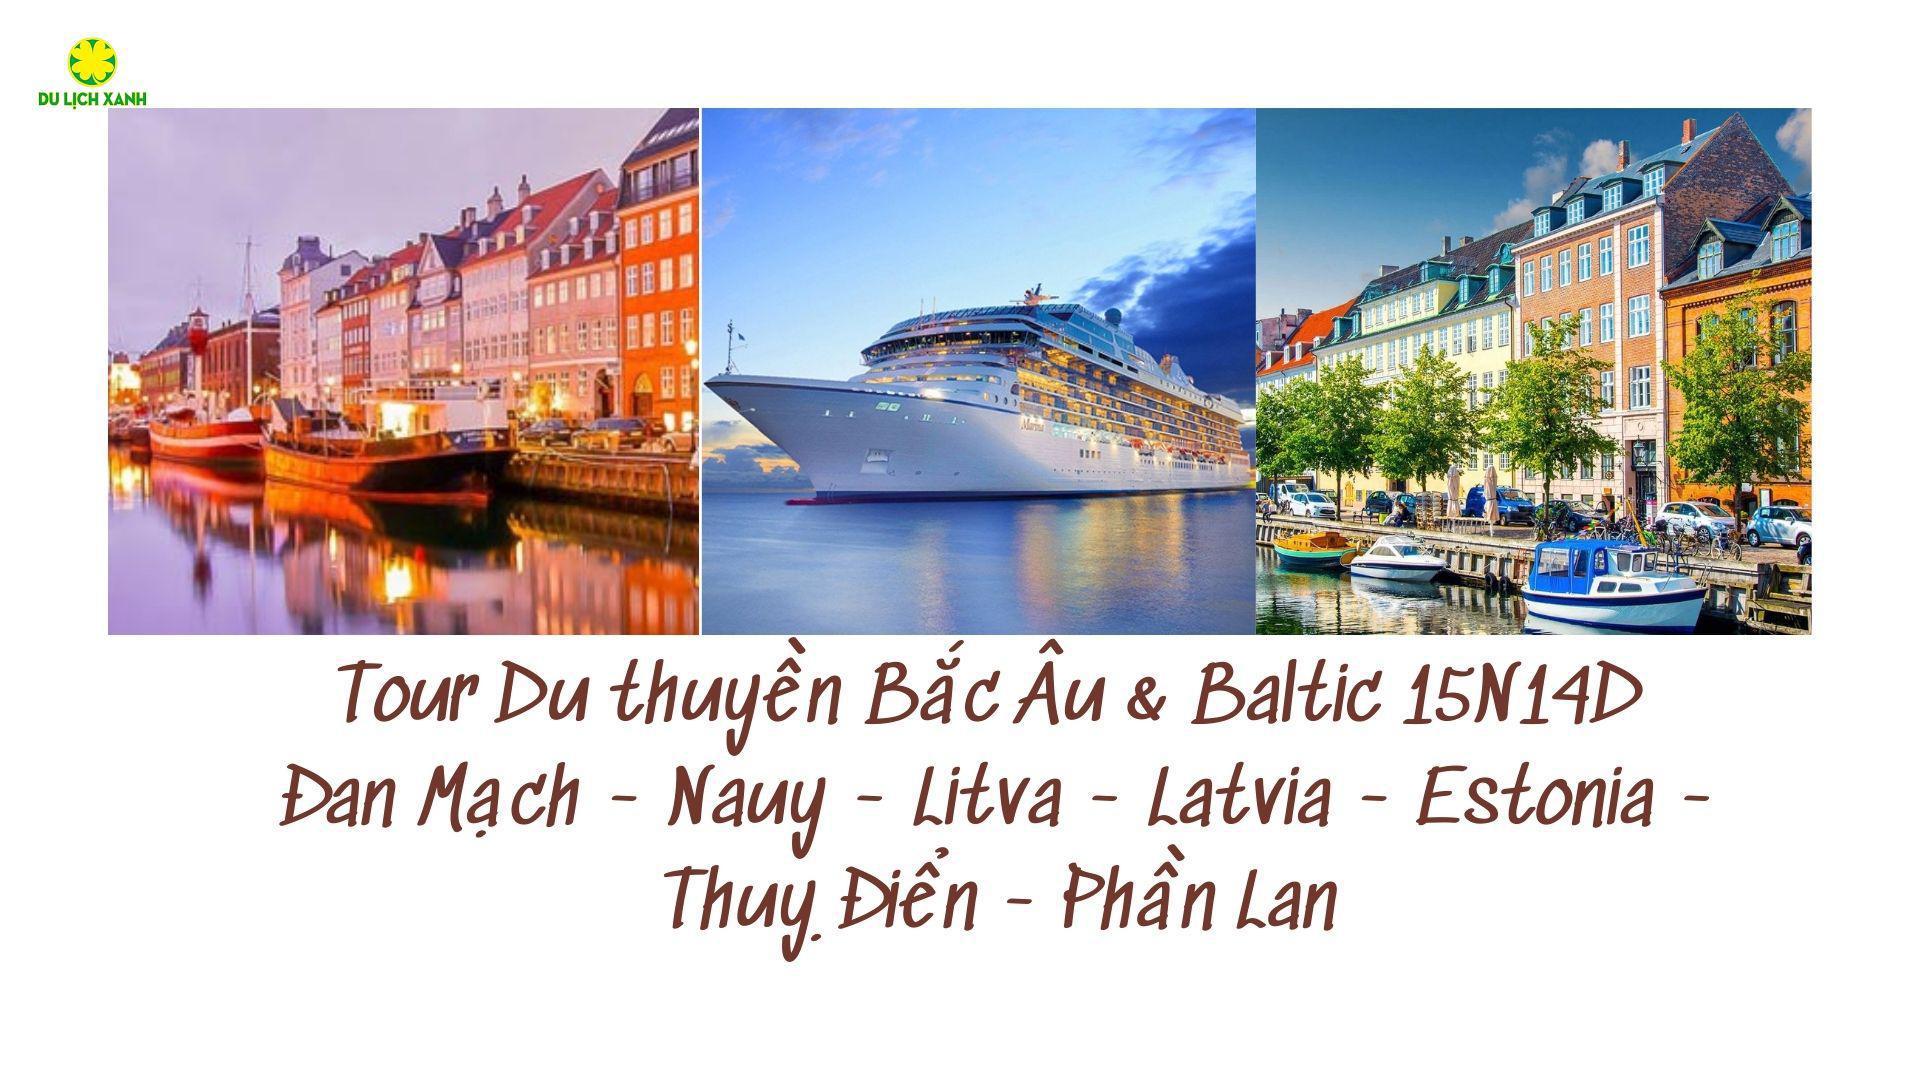 Tour Du thuyền Bắc Âu & Baltic 15N14D: Đan Mạch - Nauy - Litva - Latvia - Estonia - Thuỵ Điển - Phần Lan